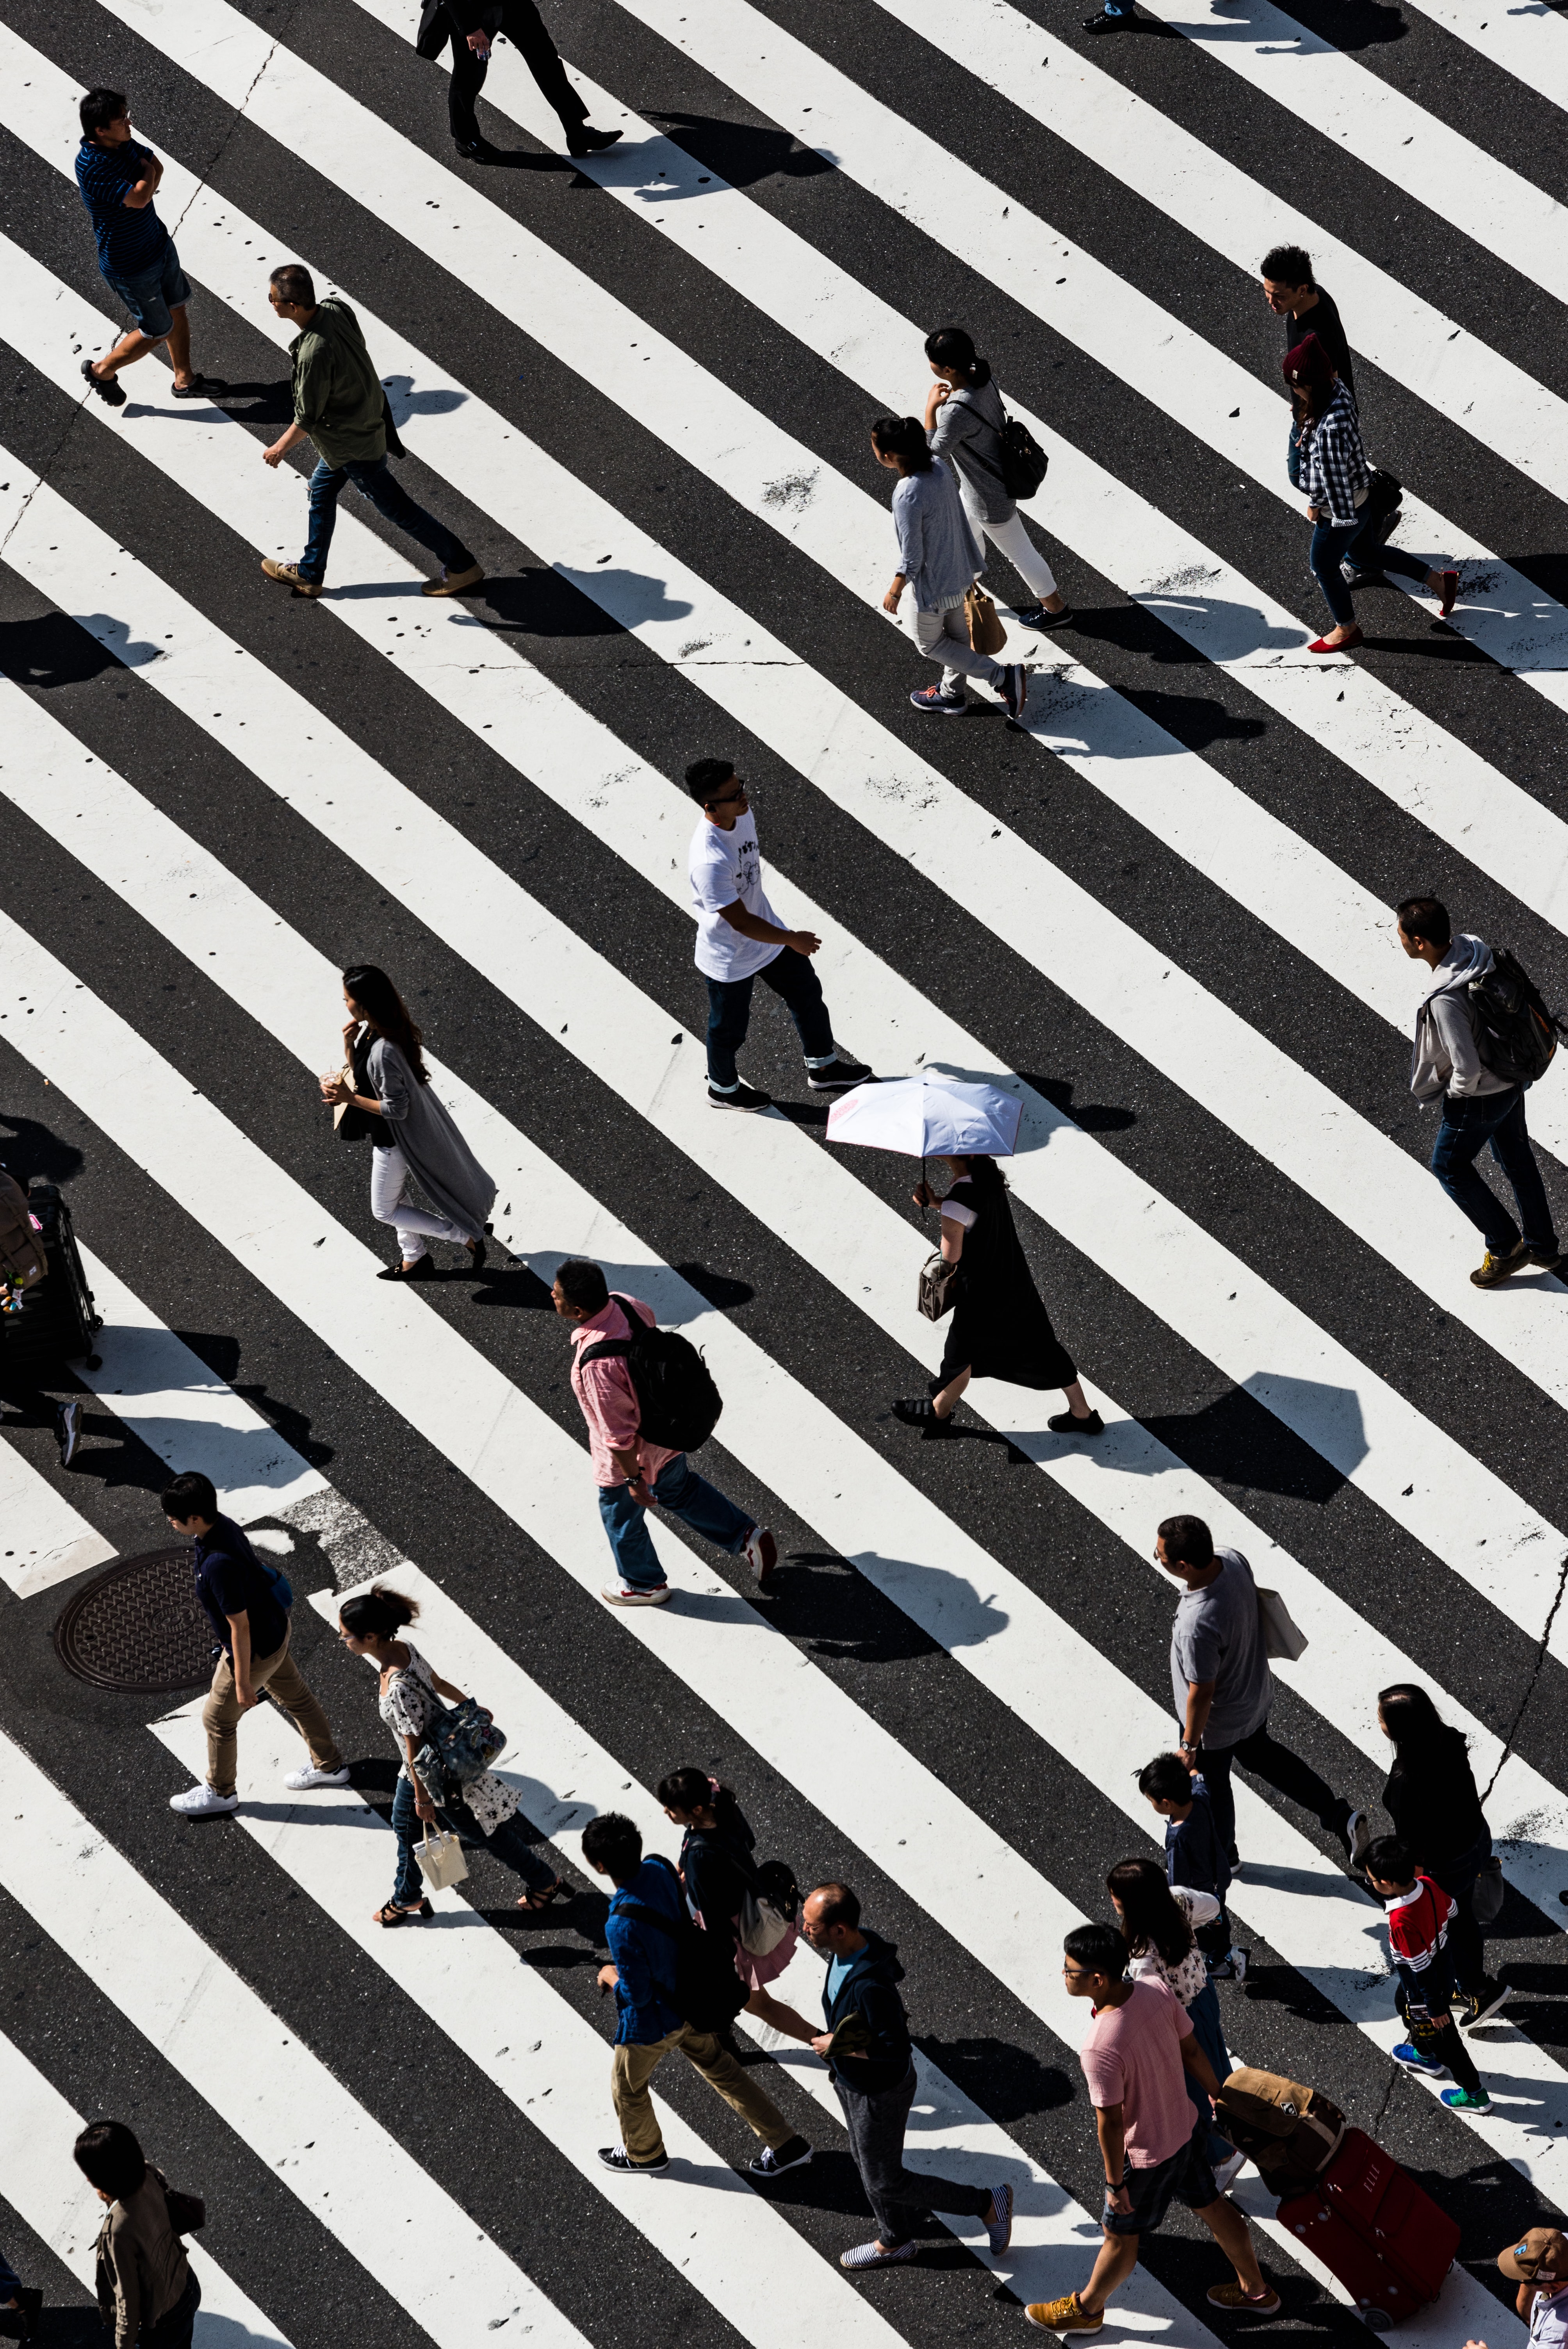 People crossing a zebra crossing in a metropolitan city